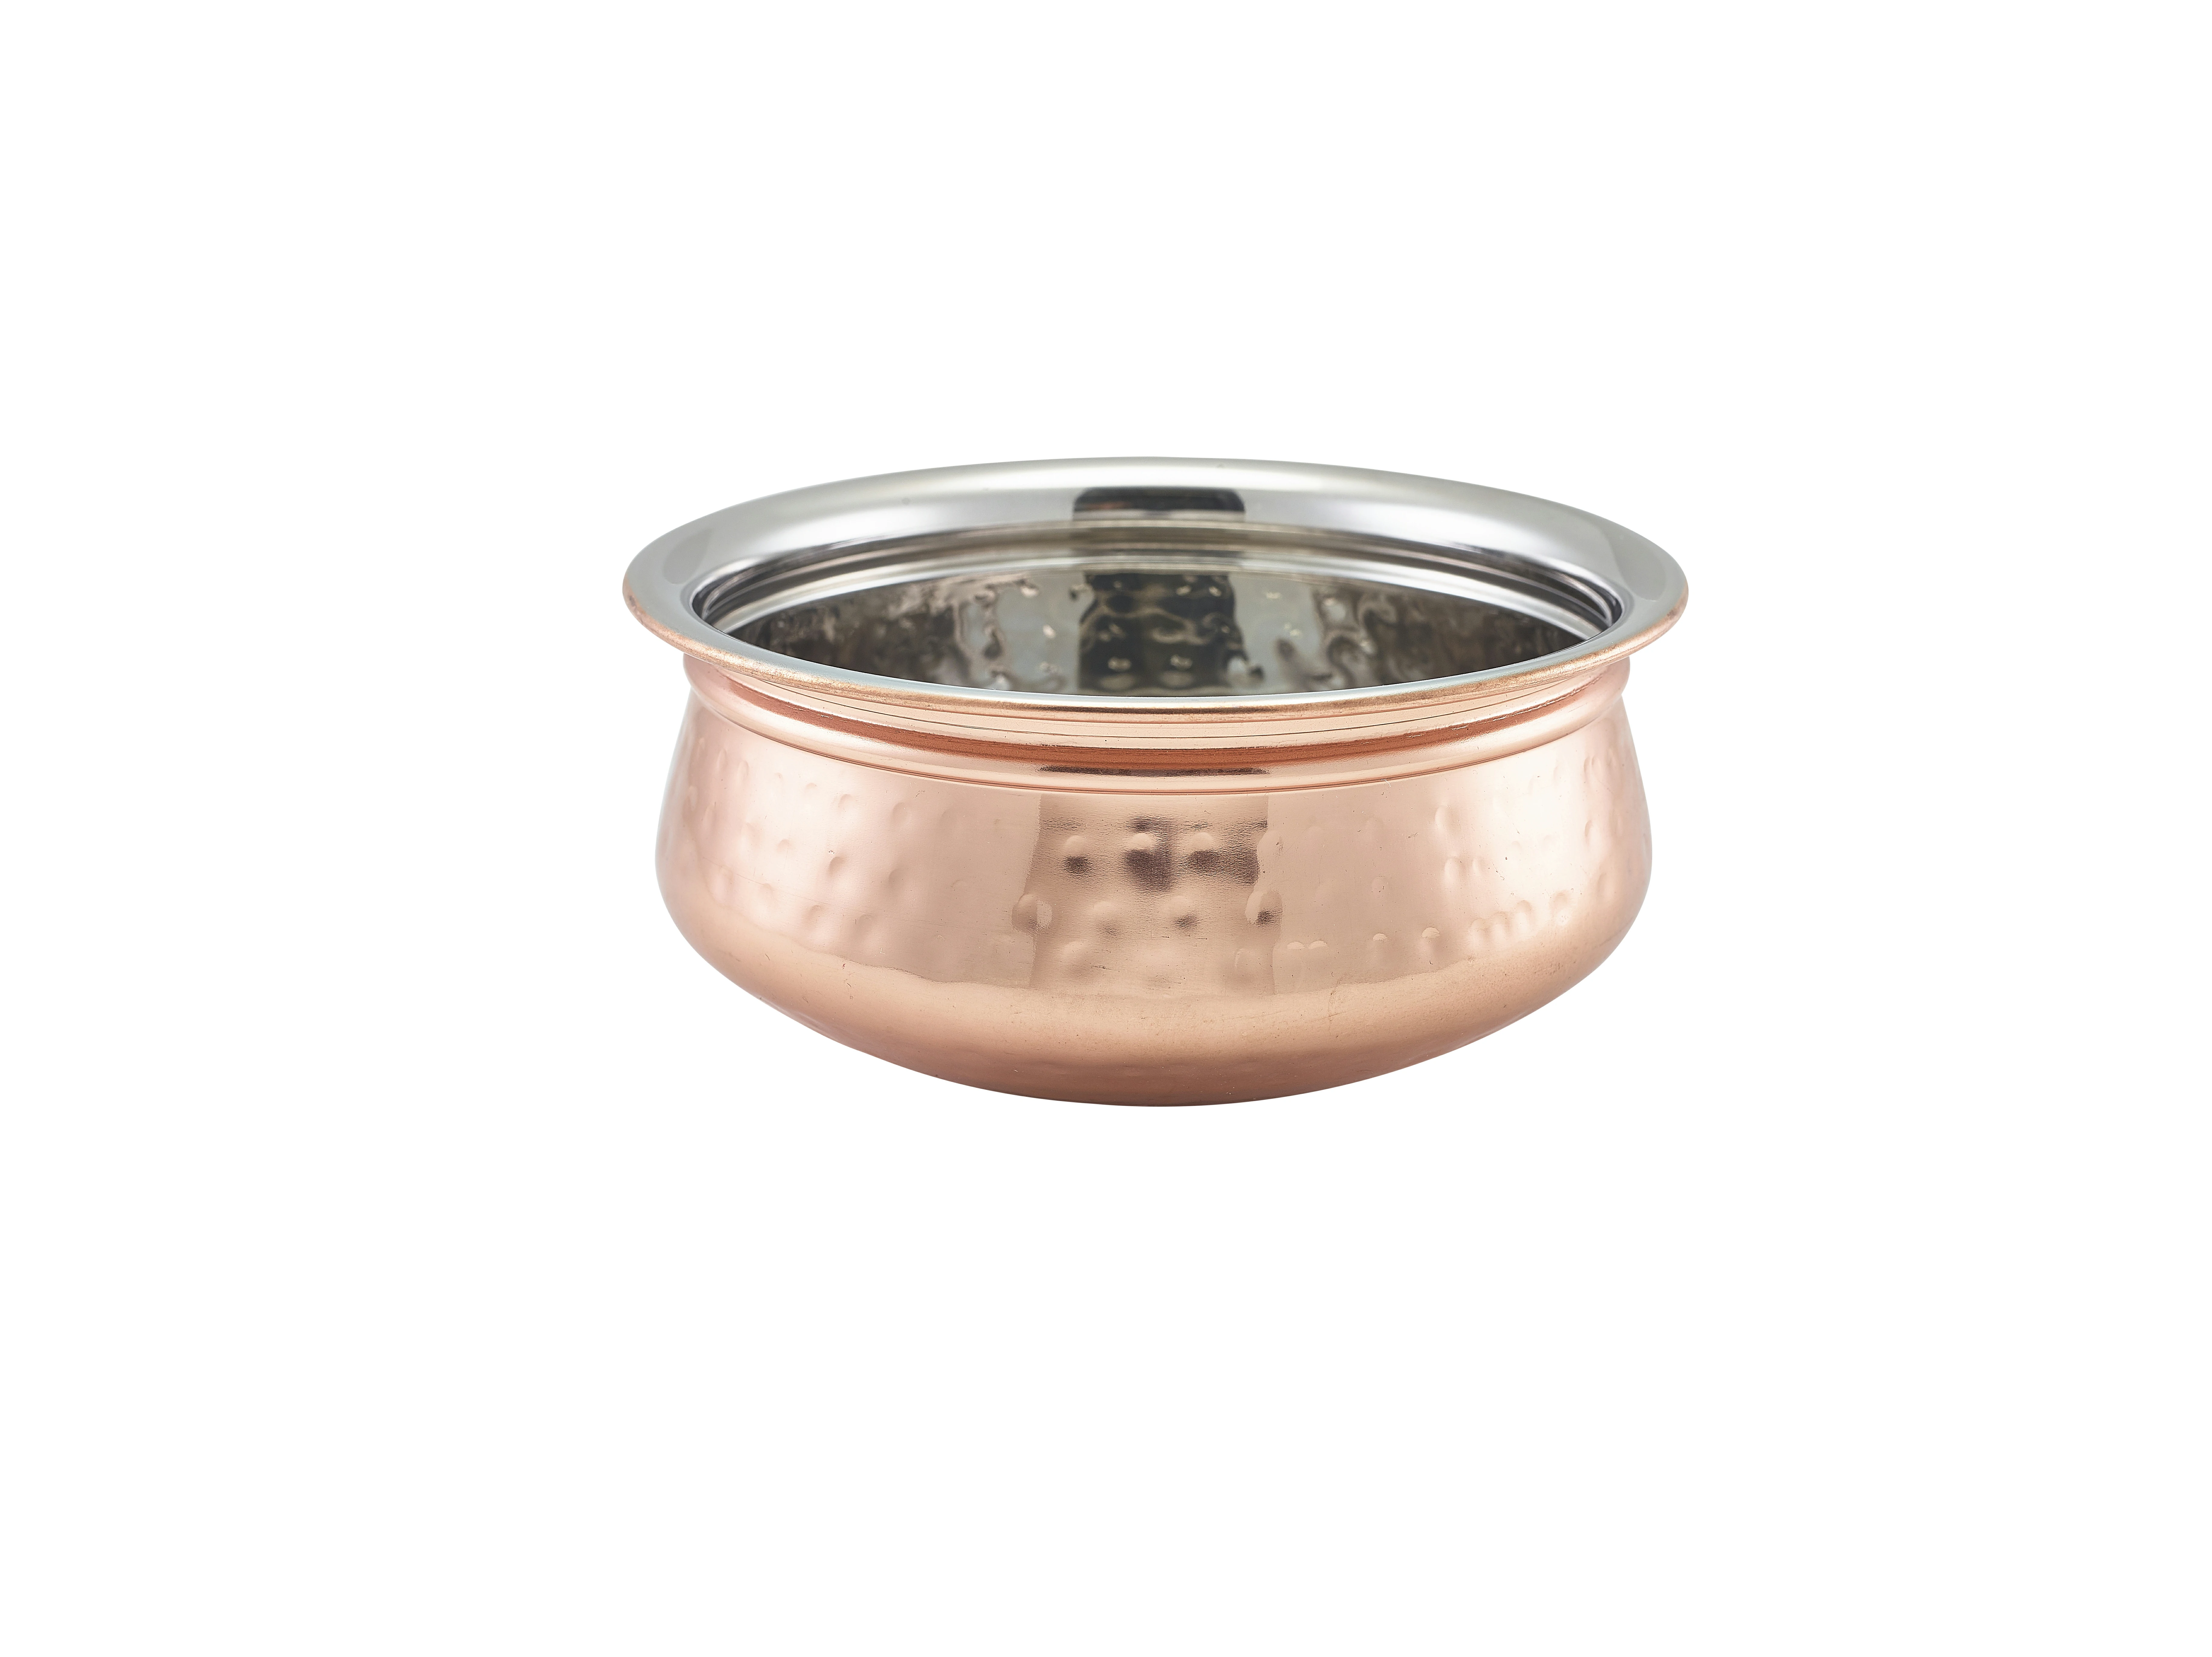 GenWare Copper Plated Handi Bowl 14.5cm